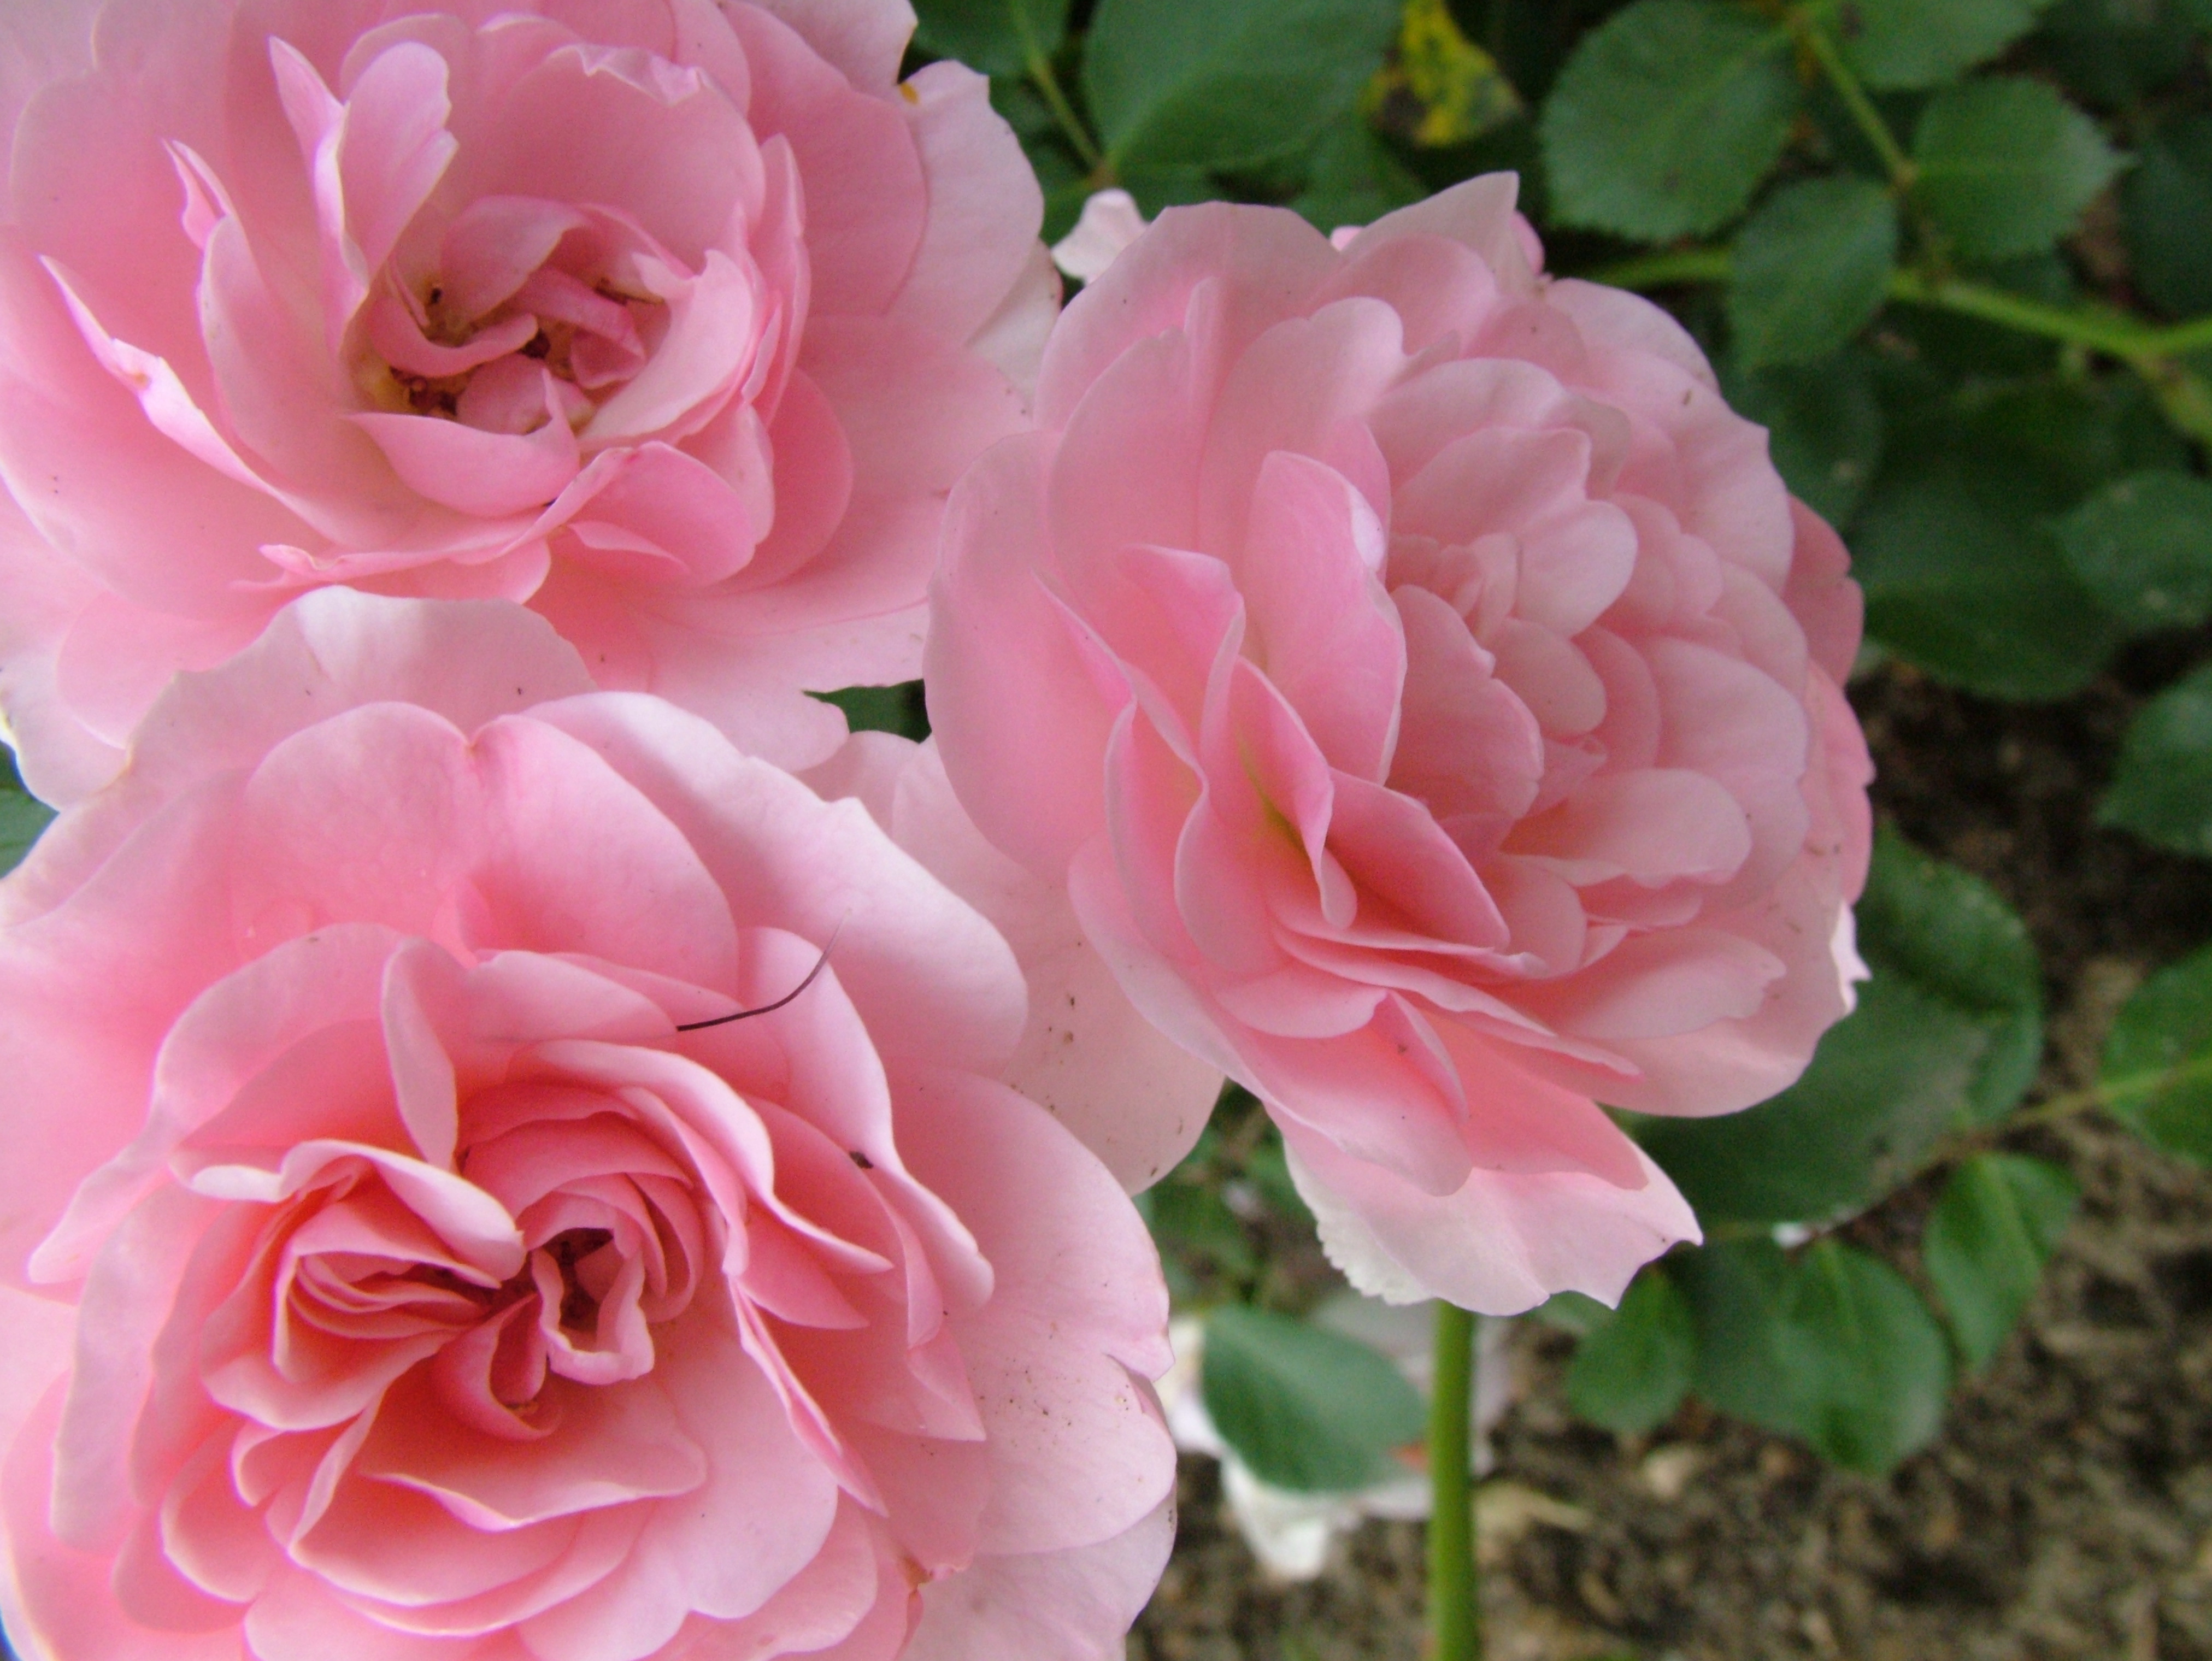 tapete rosenblüten kostenloser download,blume,blühende pflanze,julia kind stand auf,gartenrosen,rosa